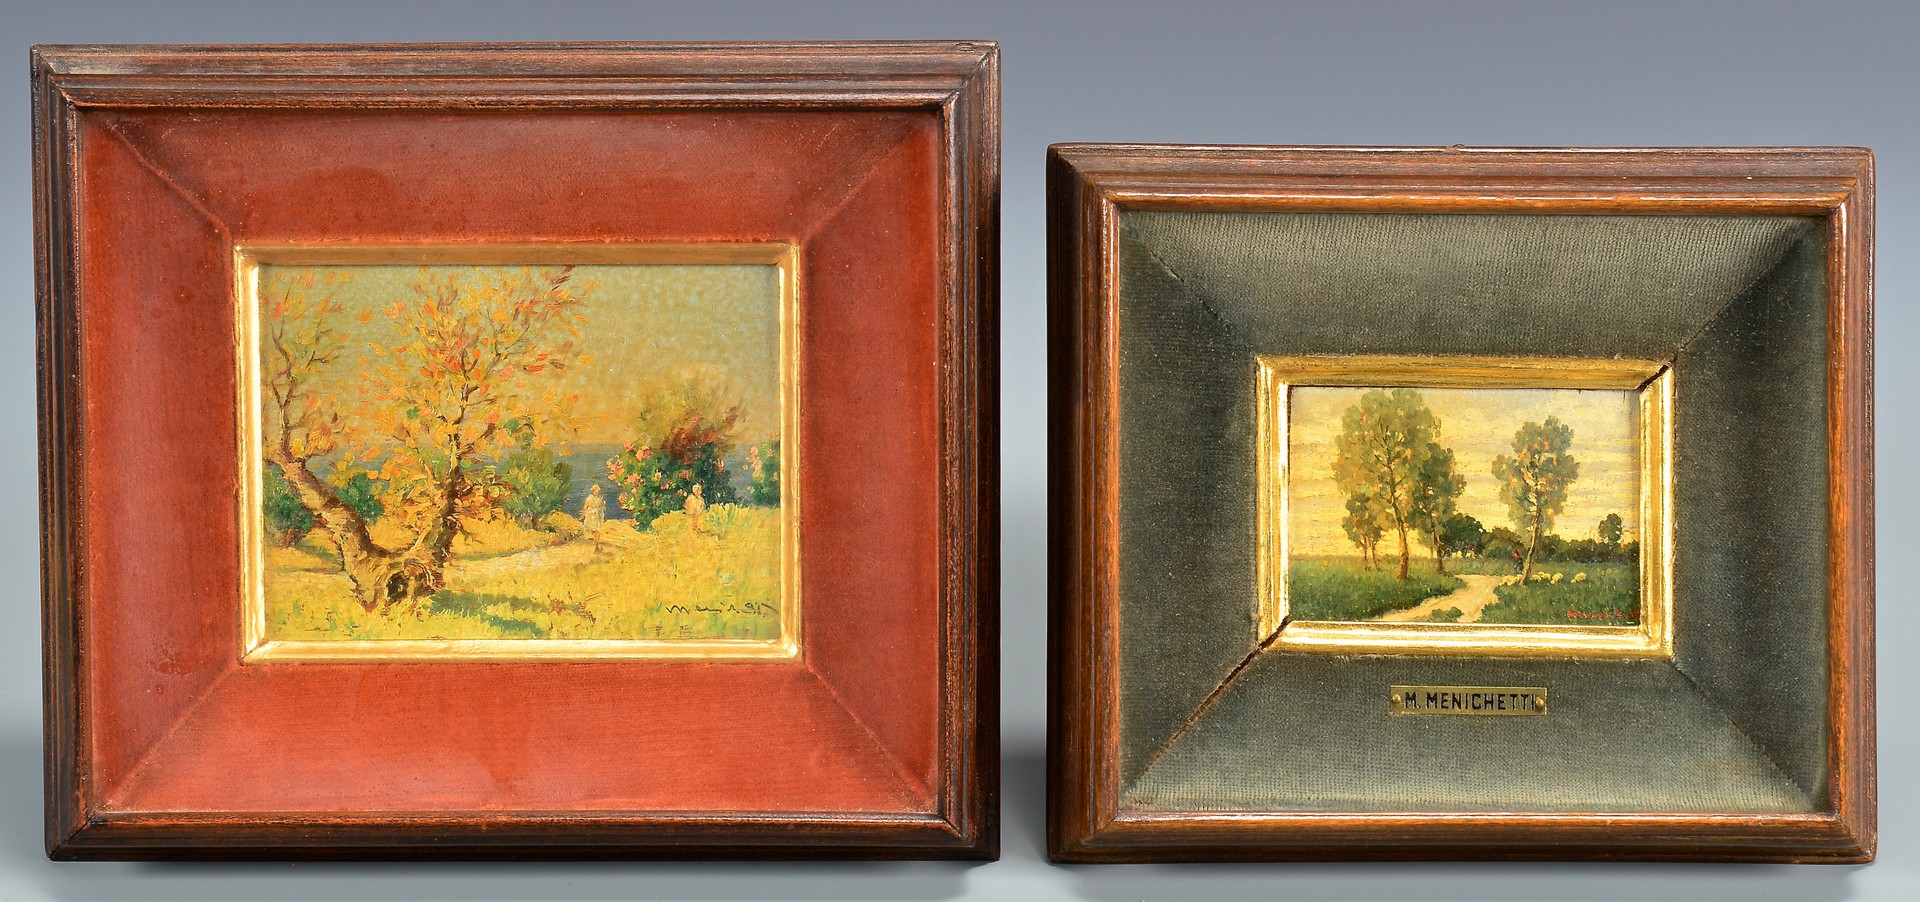 Lot 88: Two Miniature Landscapes, Menichetti